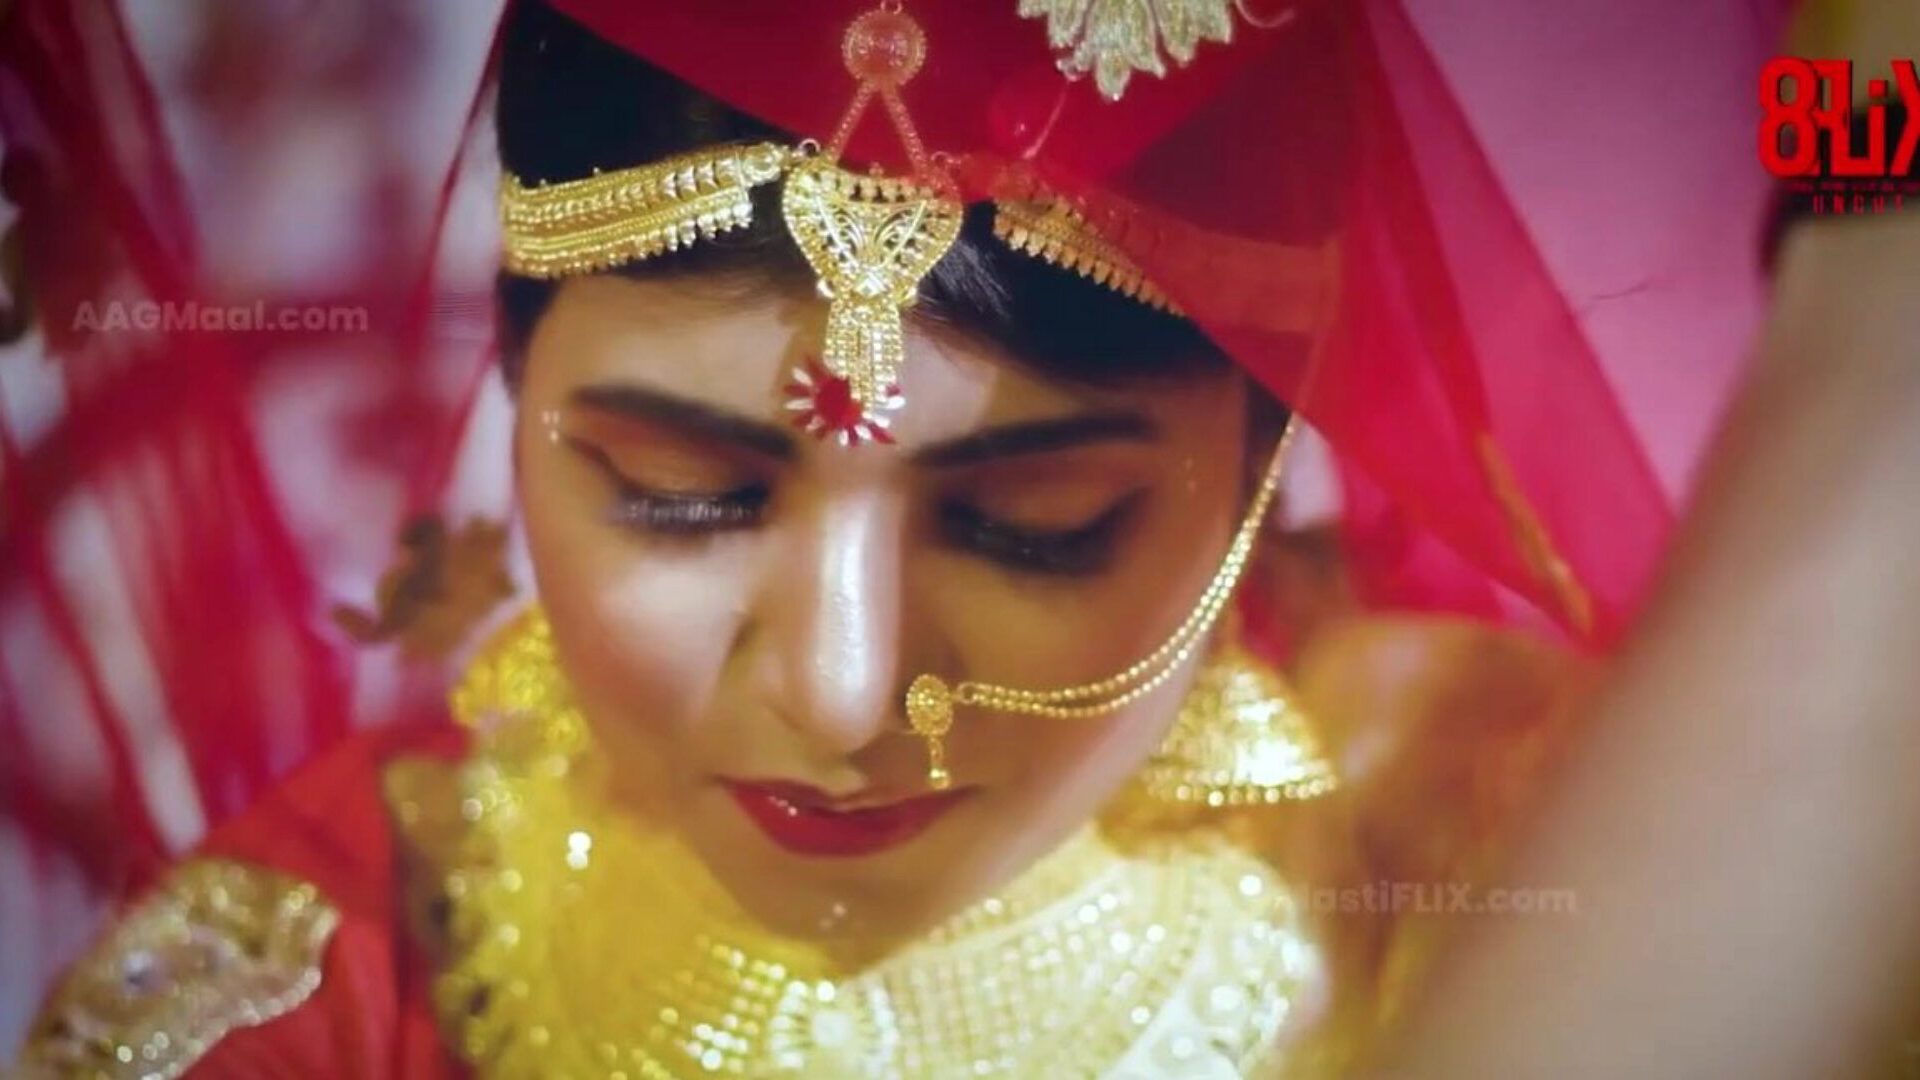 bebo vjenčanje neizrezano - sljedeća razina indijske web serije